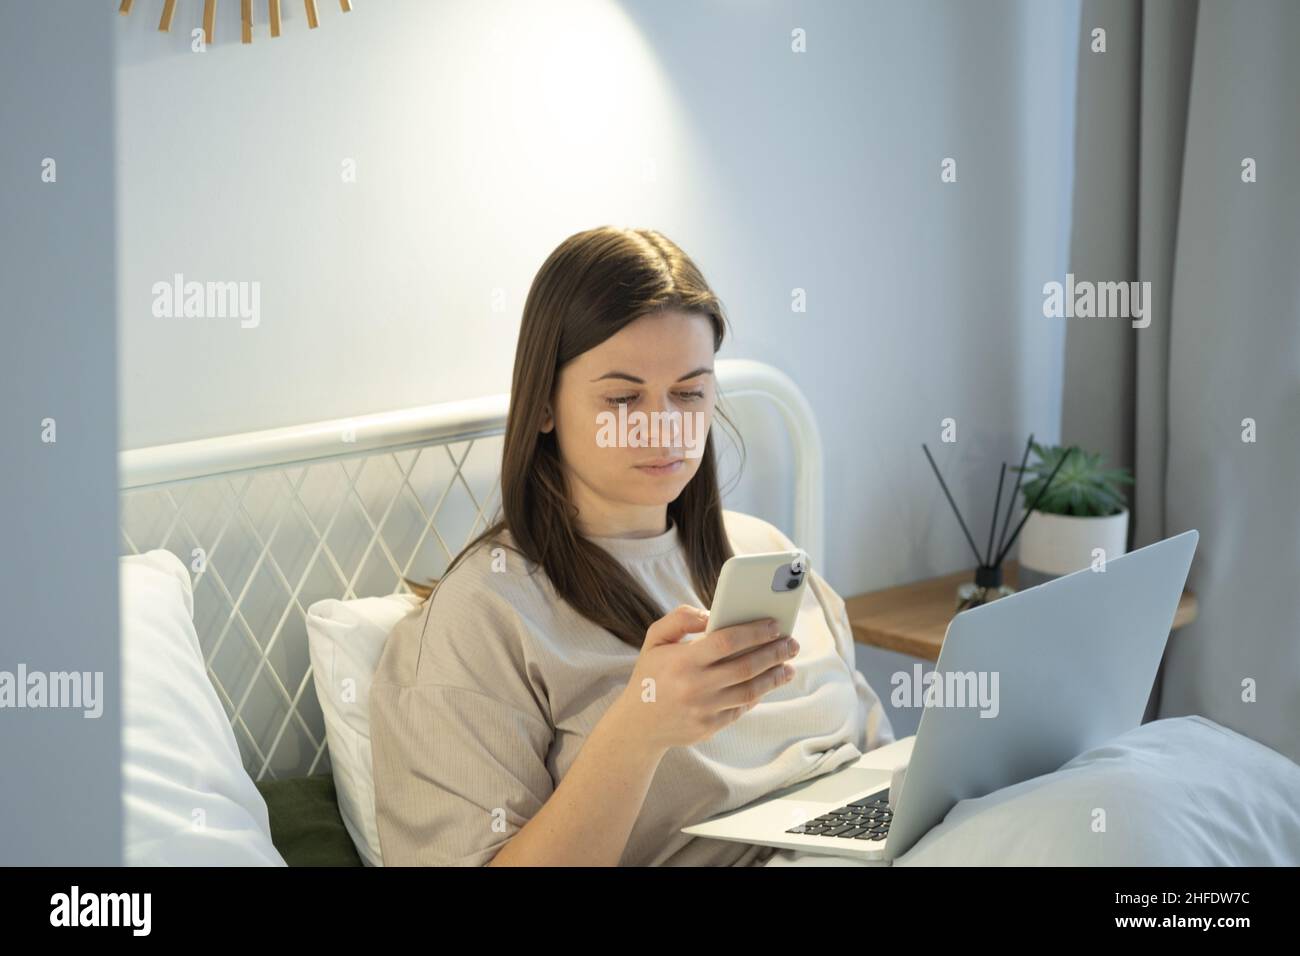 Femme utilisant un ordinateur portable et surfant sur les réseaux sociaux sur un smartphone après avoir pris le lit Banque D'Images